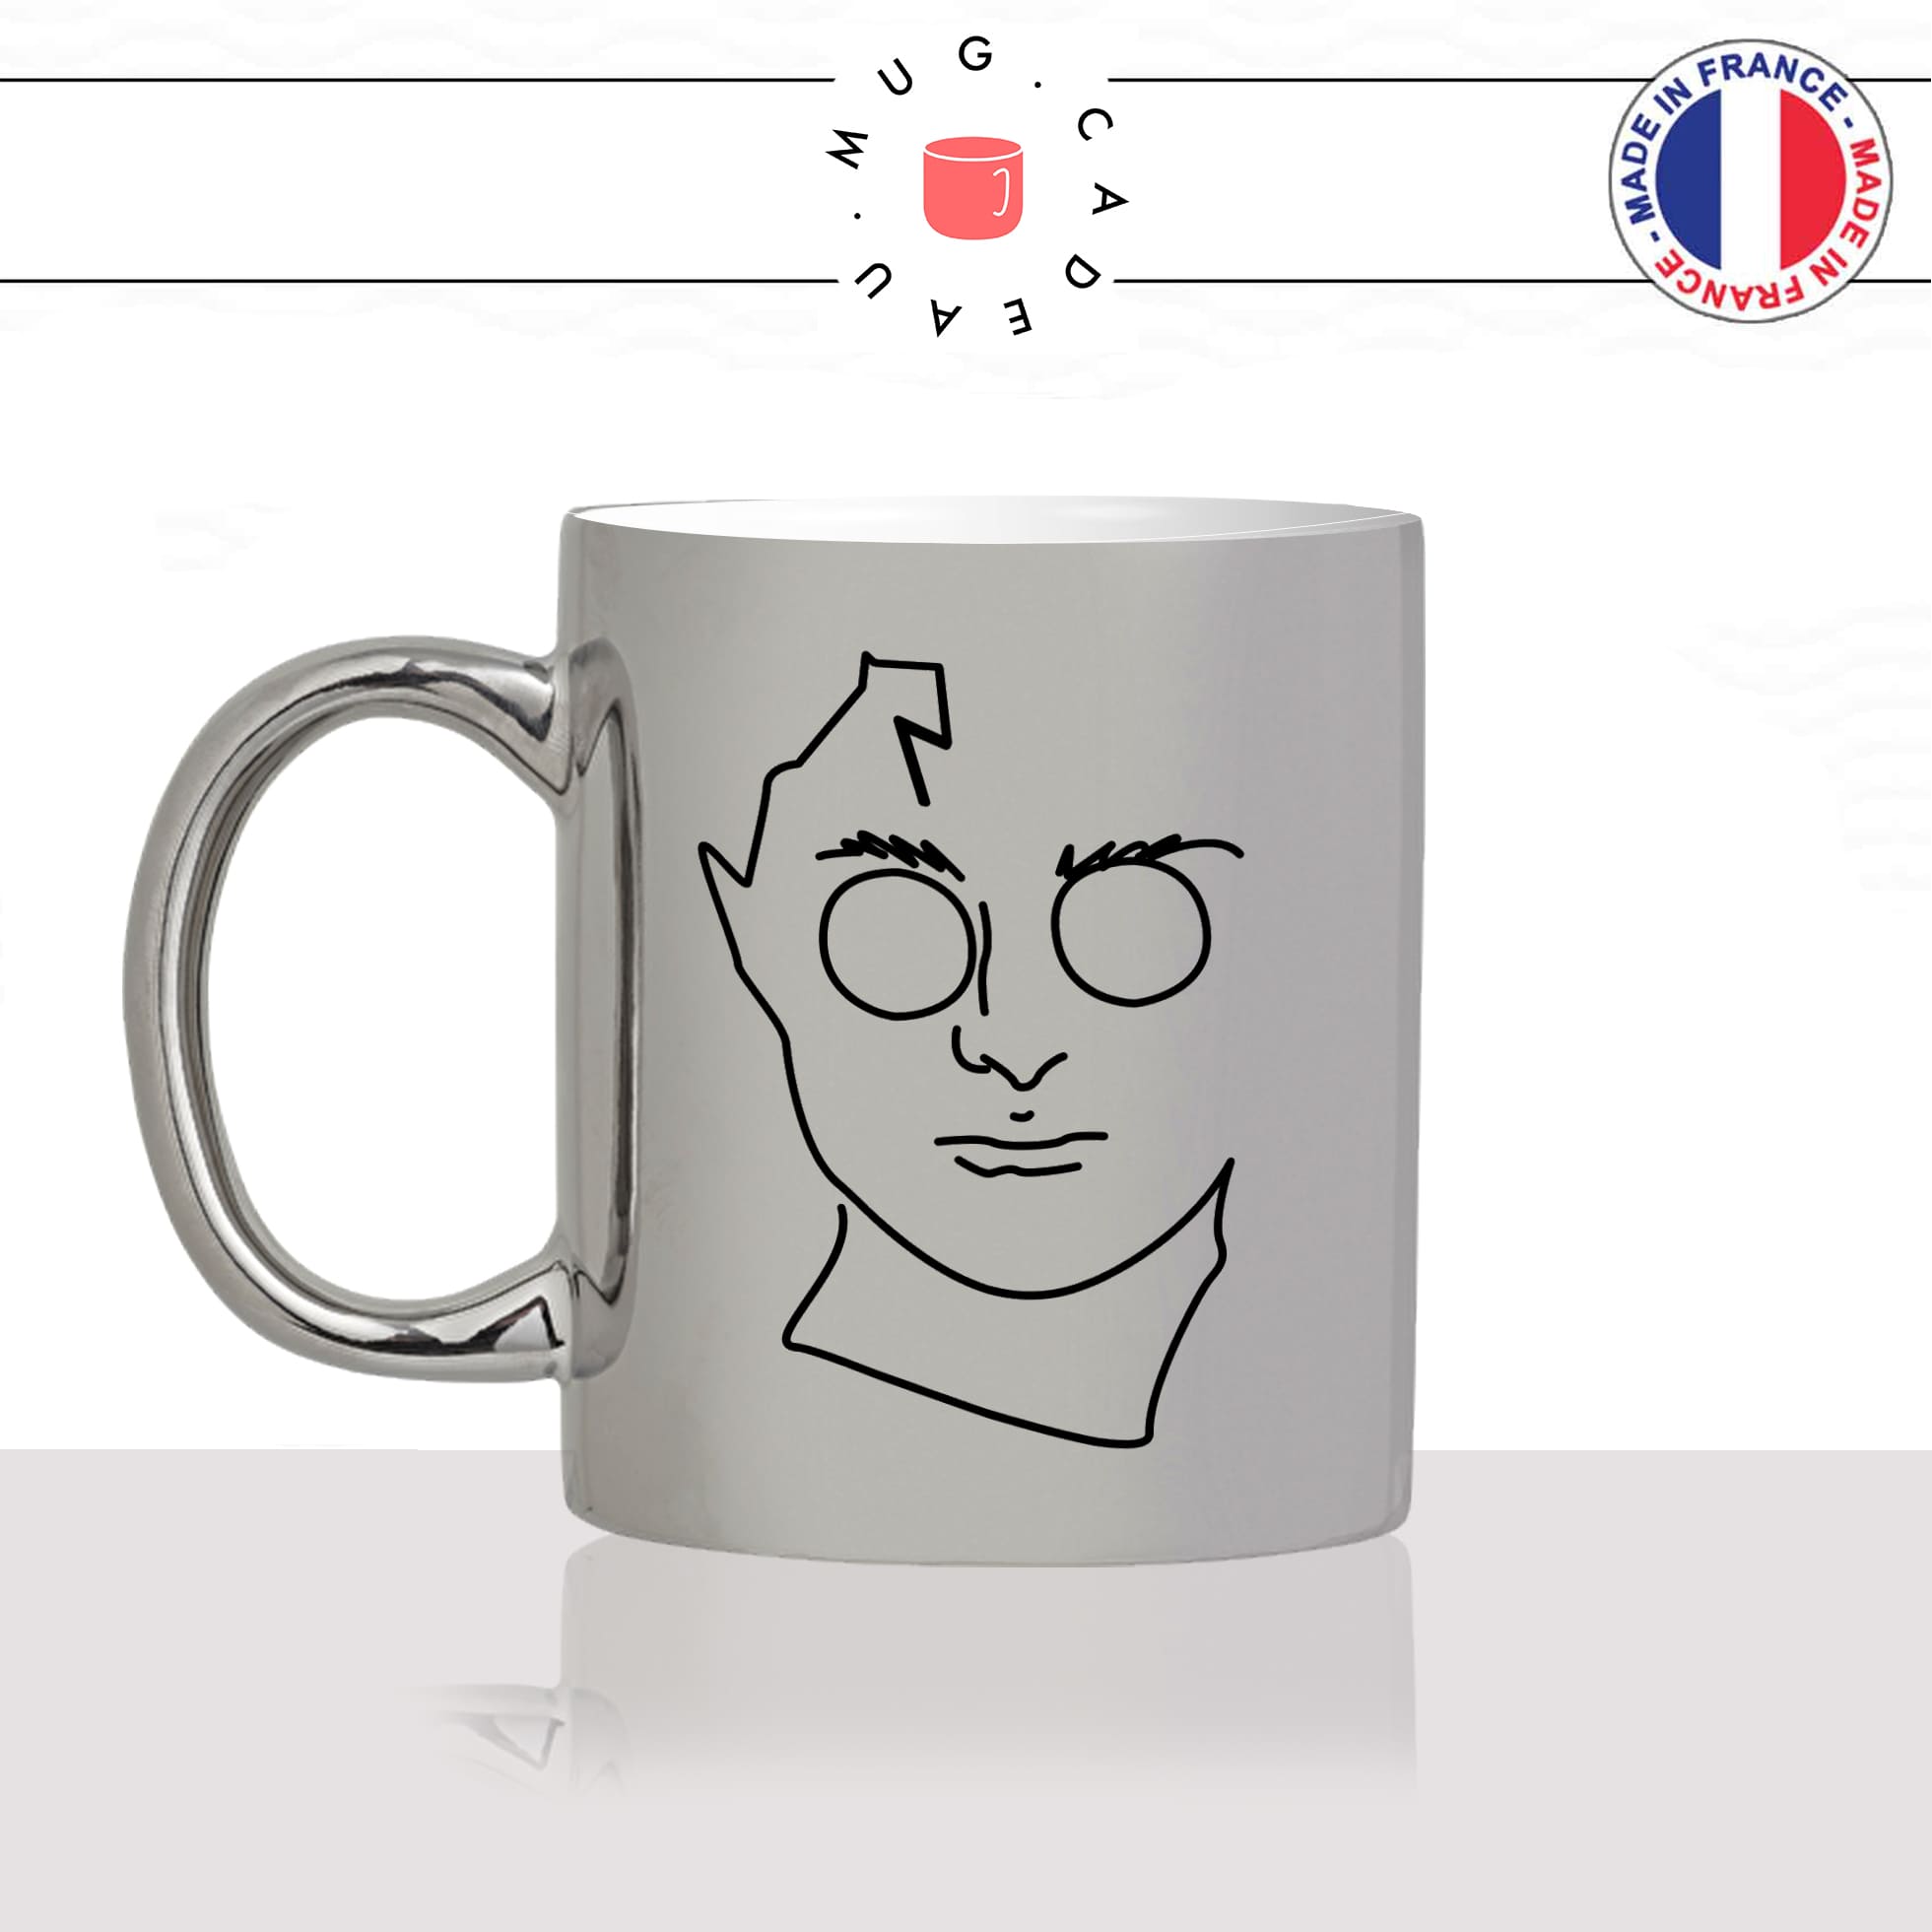 mug-tasse-argent-argenté-silver-saga-harry-potter-lunettes-chouette-edwige-fan-film-sorcier-idée-cadeau-fun-cool-café-thé